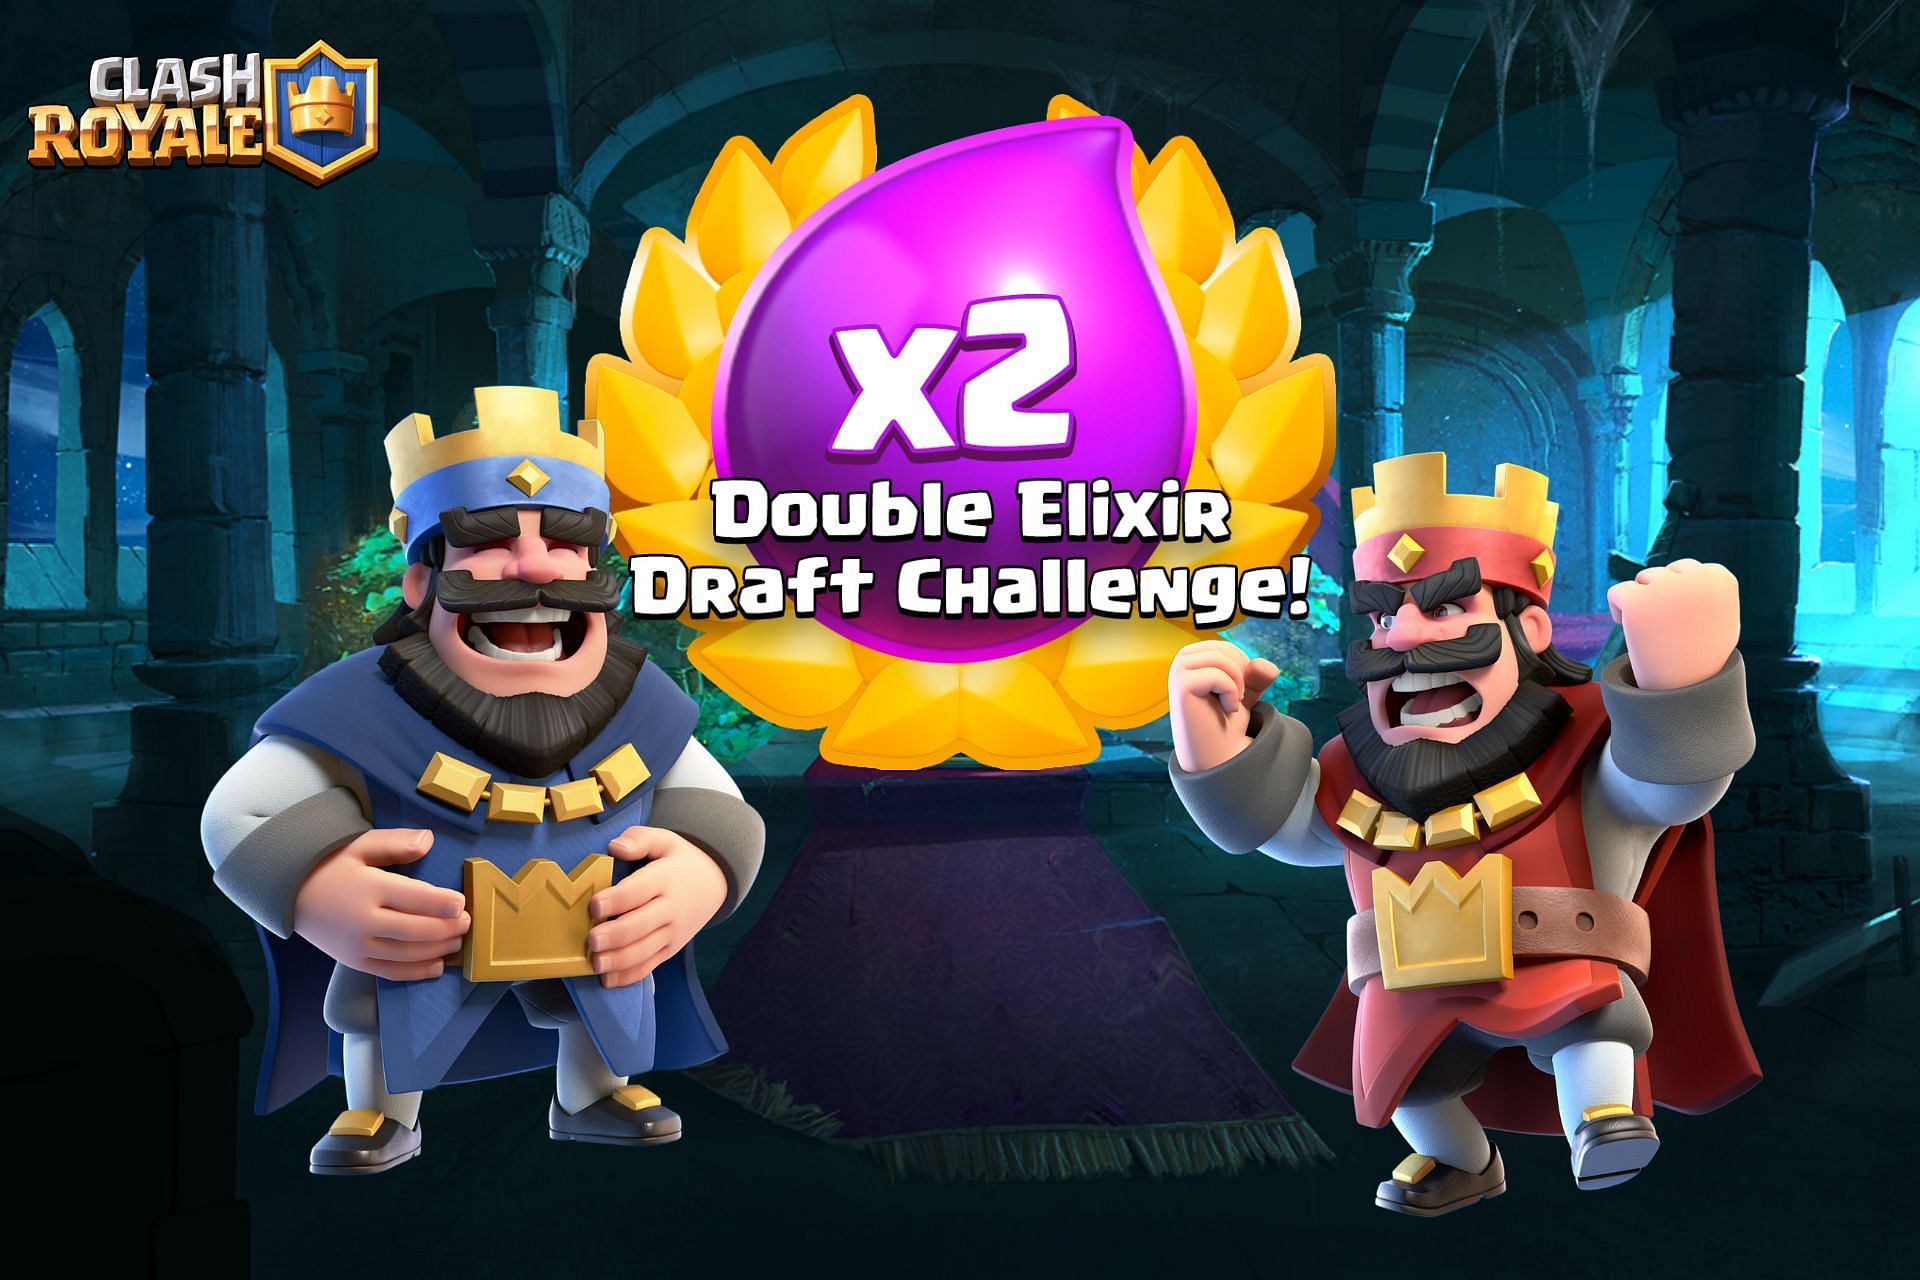 Double Elixir Challenge in Clash Royale (Image via Sportskeeda)